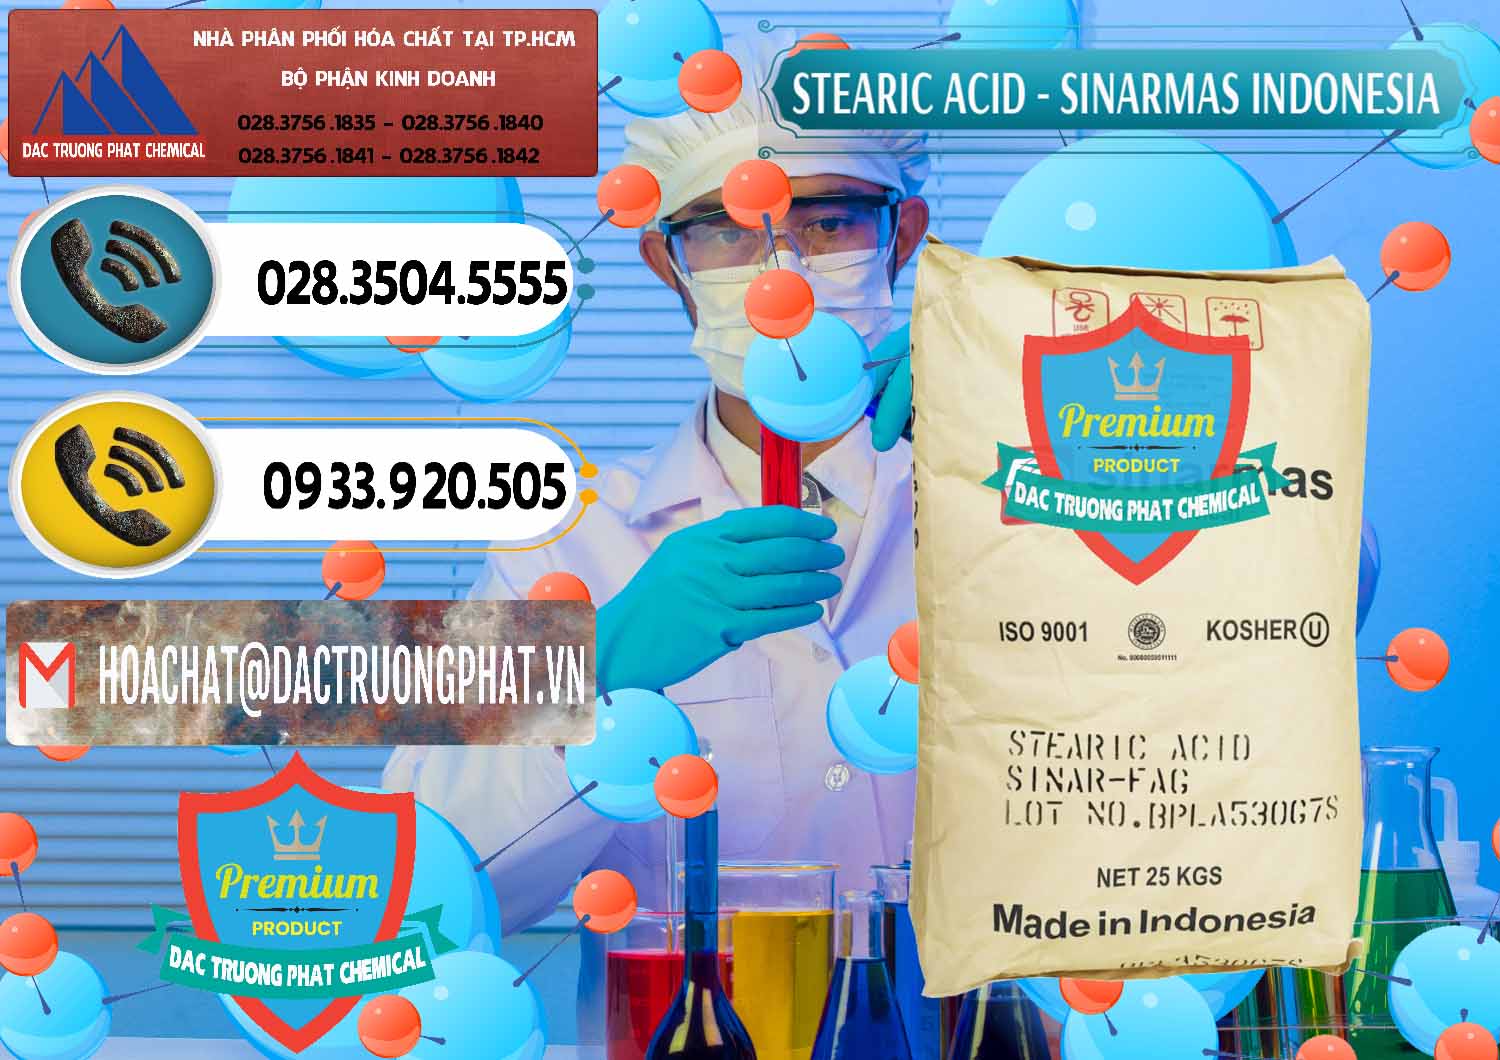 Công ty bán - cung ứng Axit Stearic - Stearic Acid Sinarmas Indonesia - 0389 - Cty phân phối - cung cấp hóa chất tại TP.HCM - hoachatdetnhuom.vn